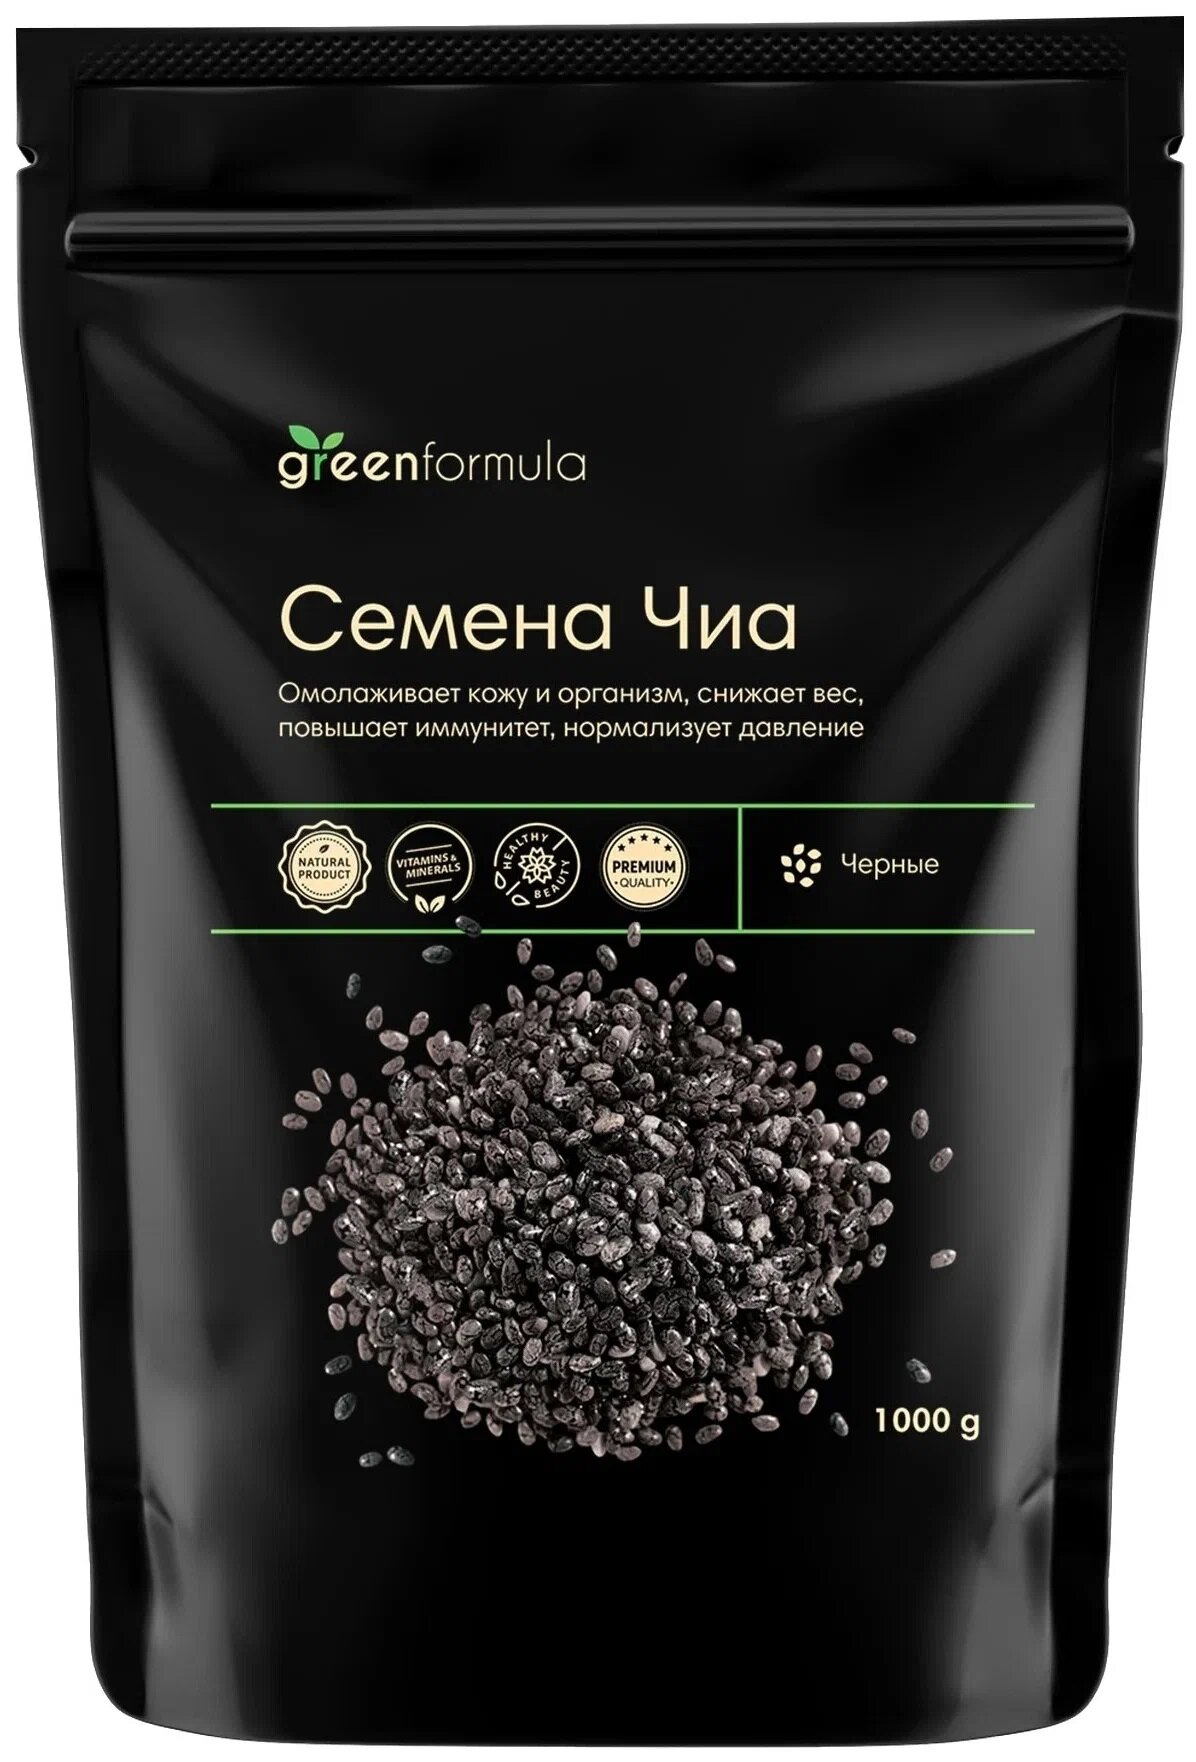 Семена Чиа greenformula черные пищевые, дой-пак, 1000 г